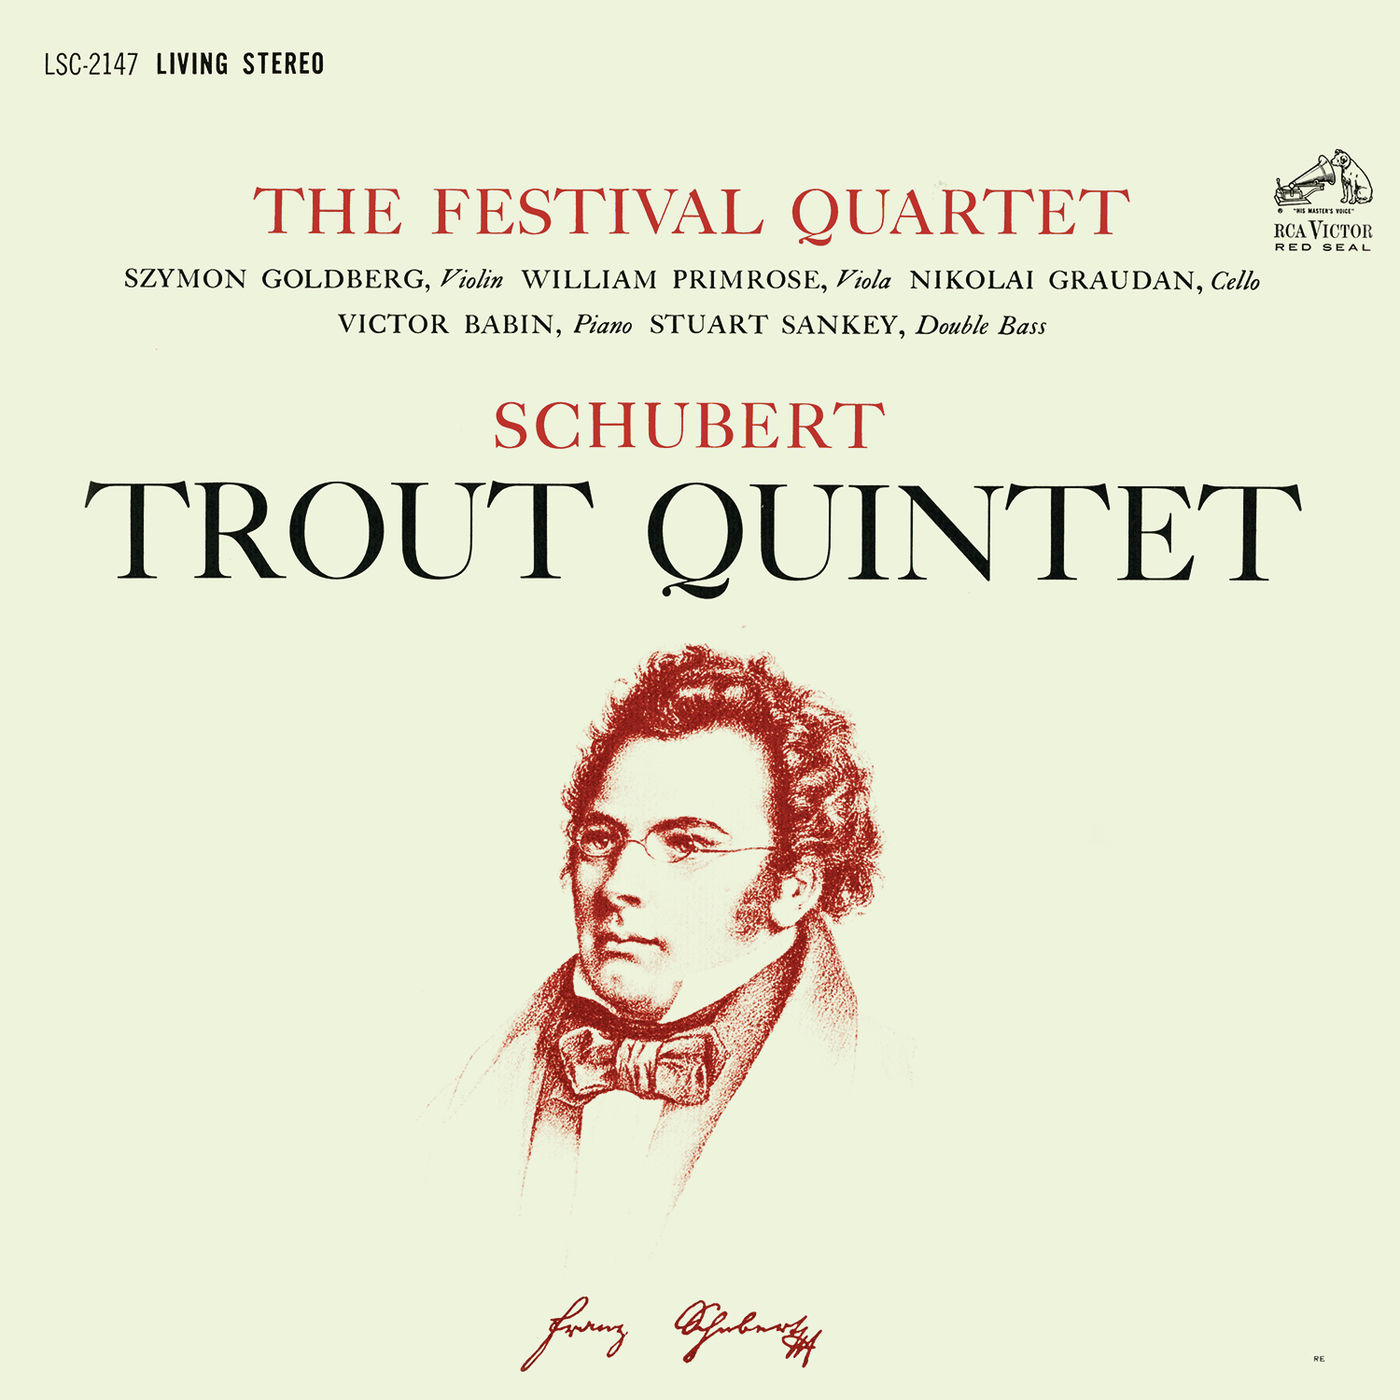 The Festival Quartet – Schubert- Piano Quintet in A Major, Op. 114, D. 667